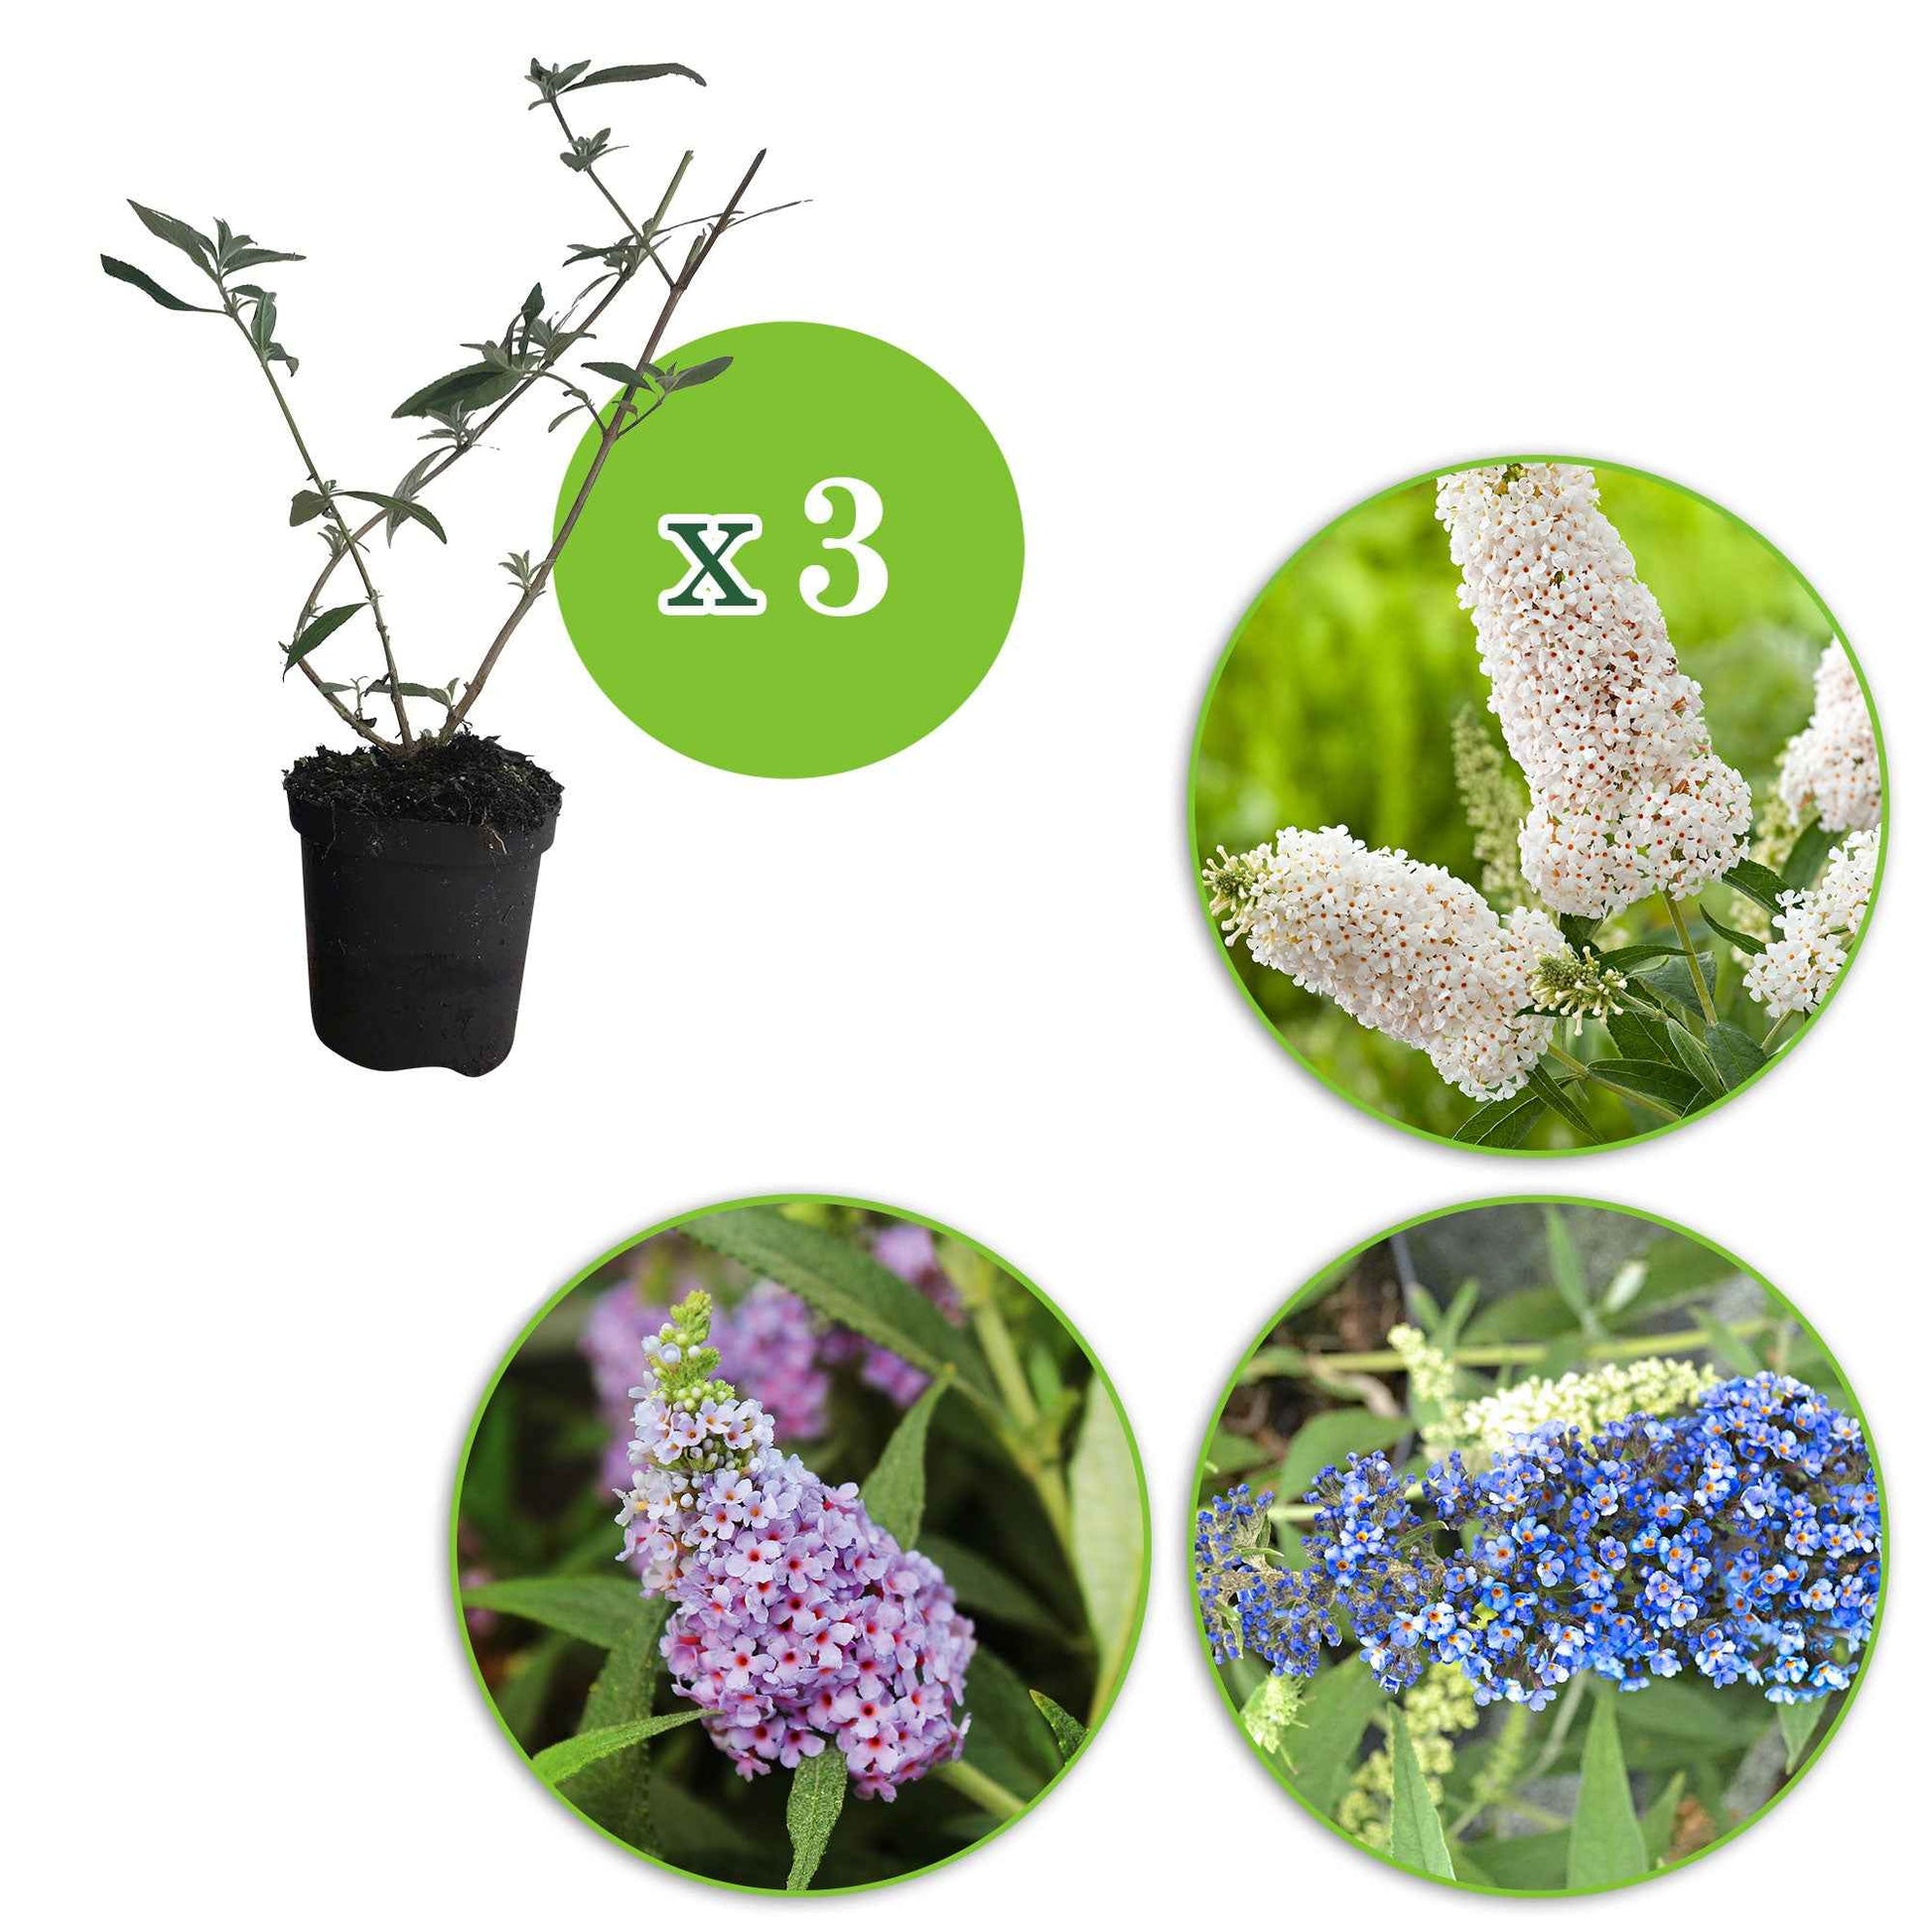 3x Schmetterlingsflieder Buddleja 'Lilac Turtle' + 'White Swan' + 'Blue Sarah' blau-lila-weiβ 'Tricolor' - Winterhart - Bienen- und schmetterlingsfreundliche Pflanzen